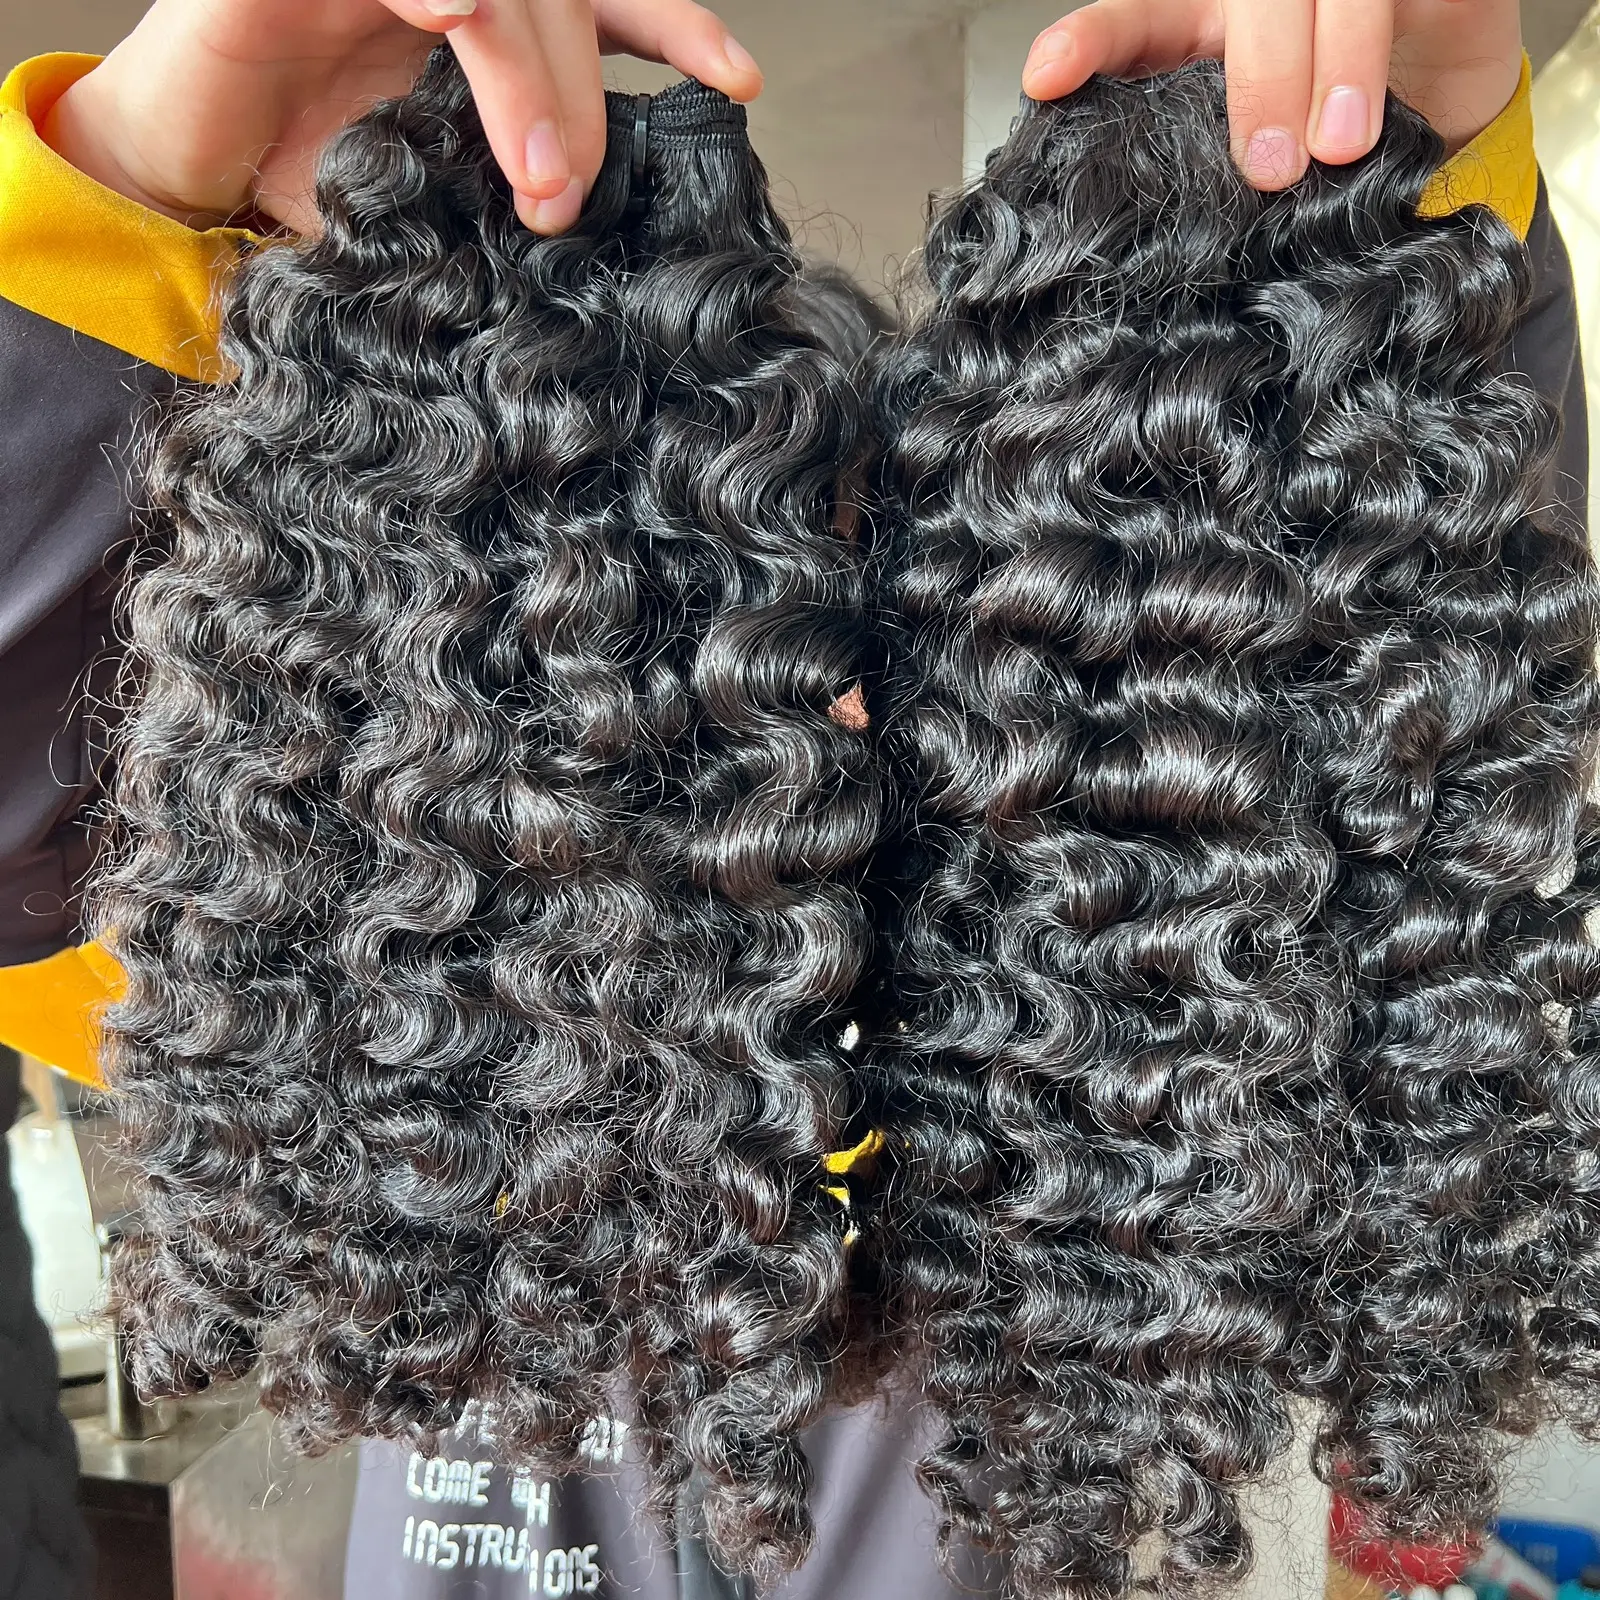 Bundel rambut Rusia rambut manusia keriting alami tidak diproses Wig ekstensi rambut manusia grosir